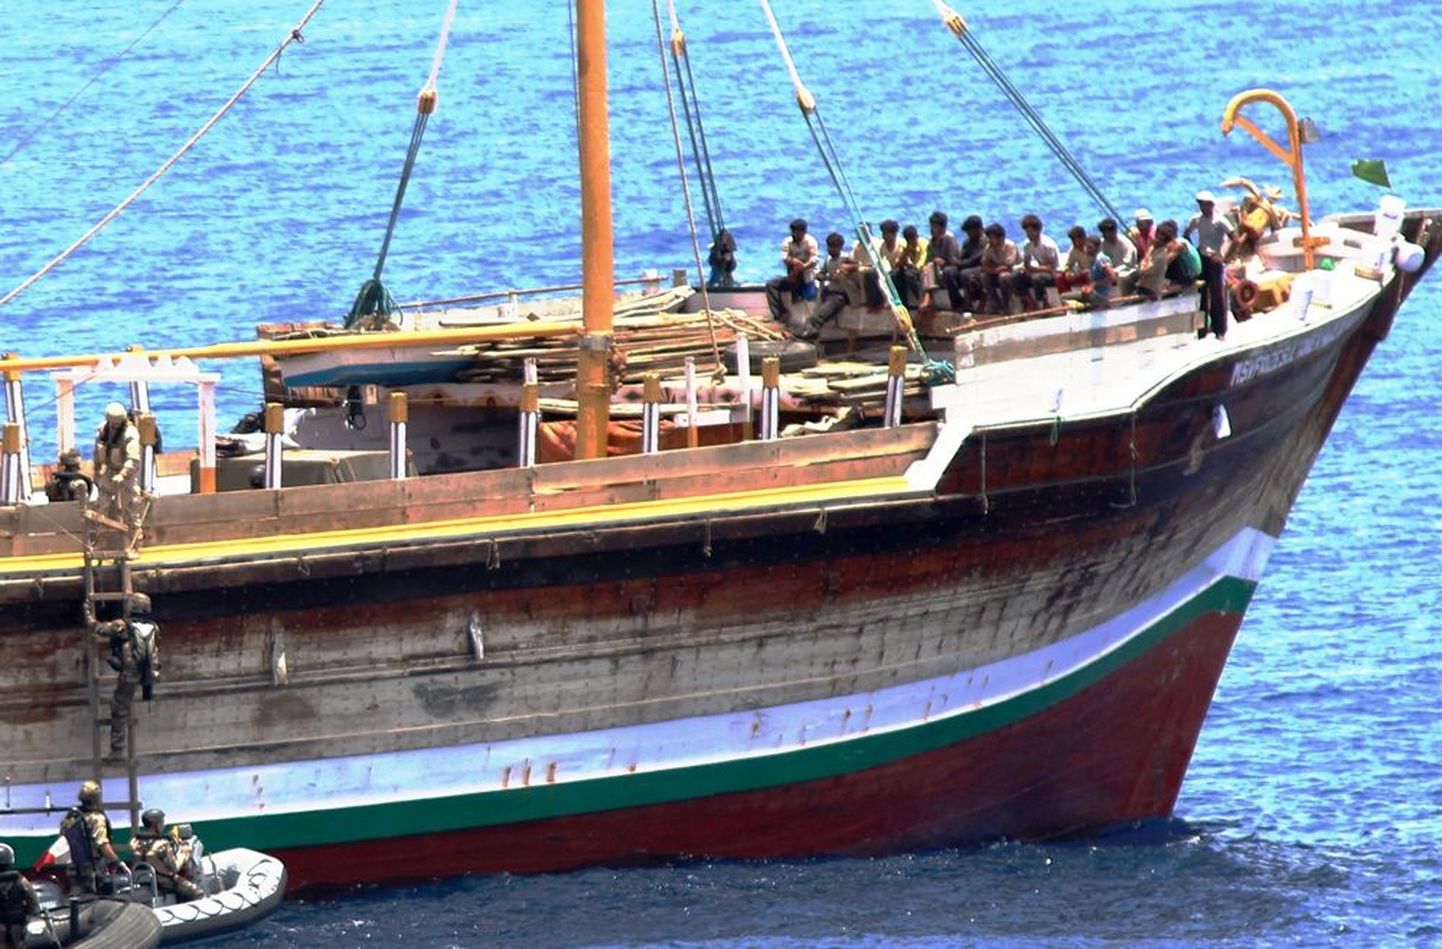 Piraadid kaaperdatud Jeemeni laeval, mis sai pärast Prantsuse fregatilt korraldatud vabastusoperatsiooni koju seilata samamoodi, nagu mereröövlidki pärast mõnepäevast vangistust. Ühe öö loksusid sellel alusel valvuritena ka Eesti laevakaitsjad.